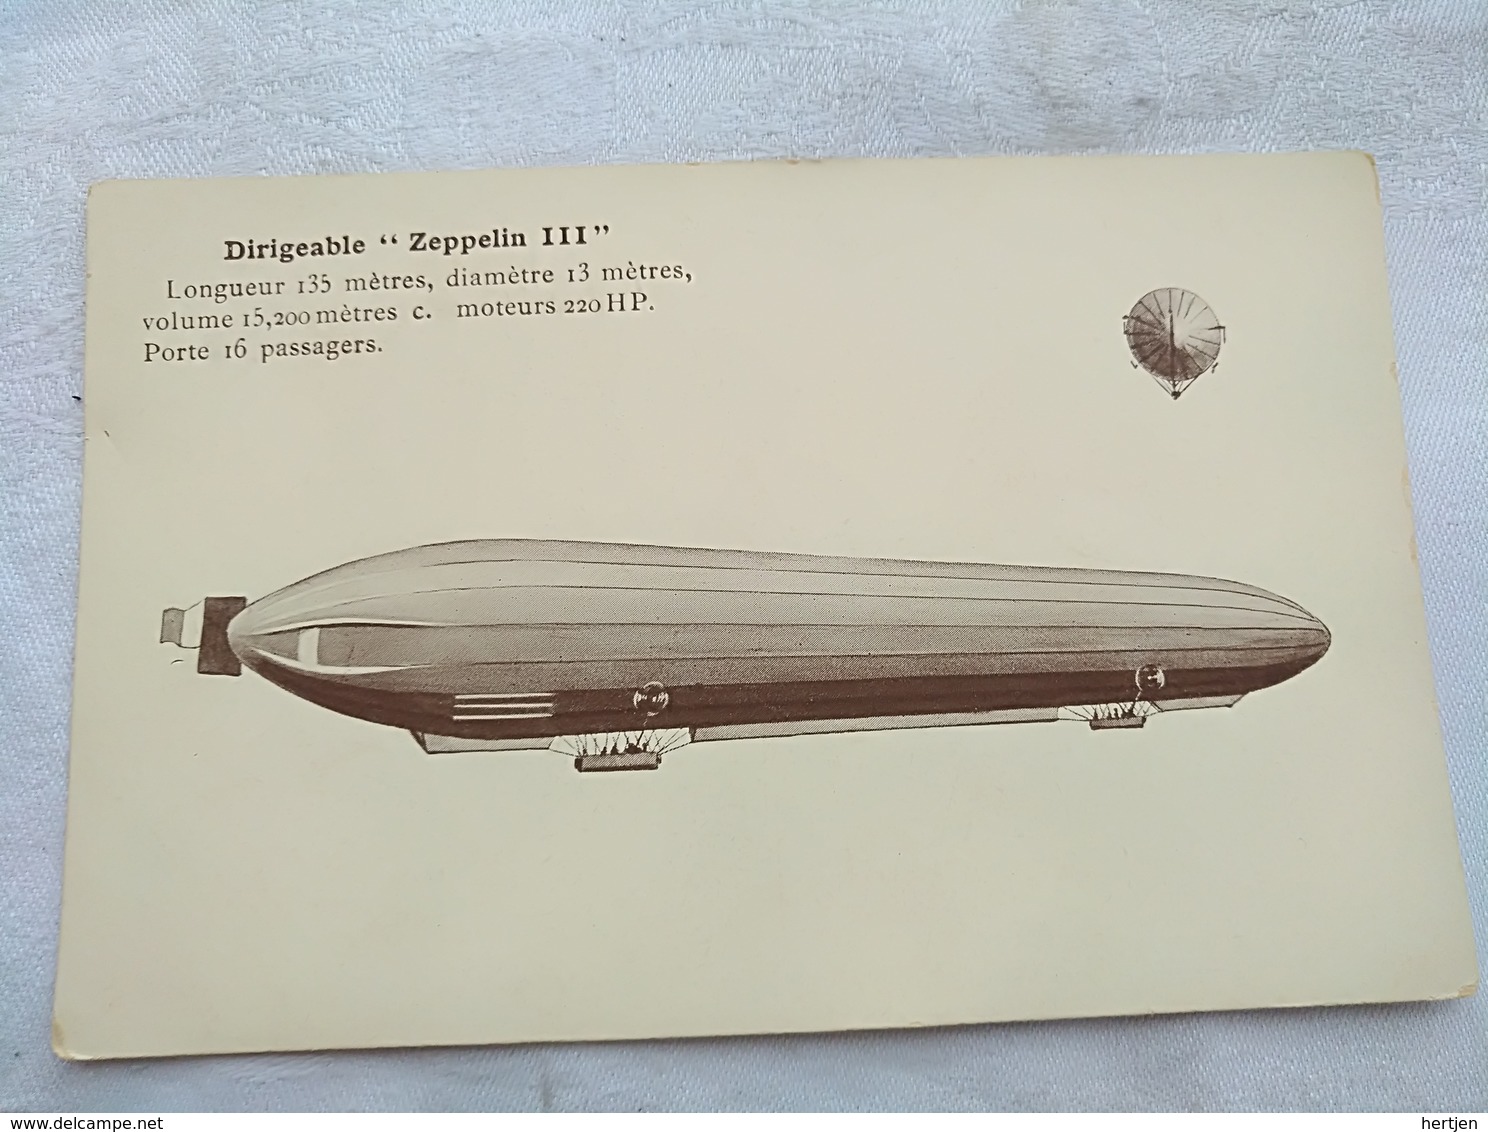 Dirigeable "Zeppelin III " - Dirigeables